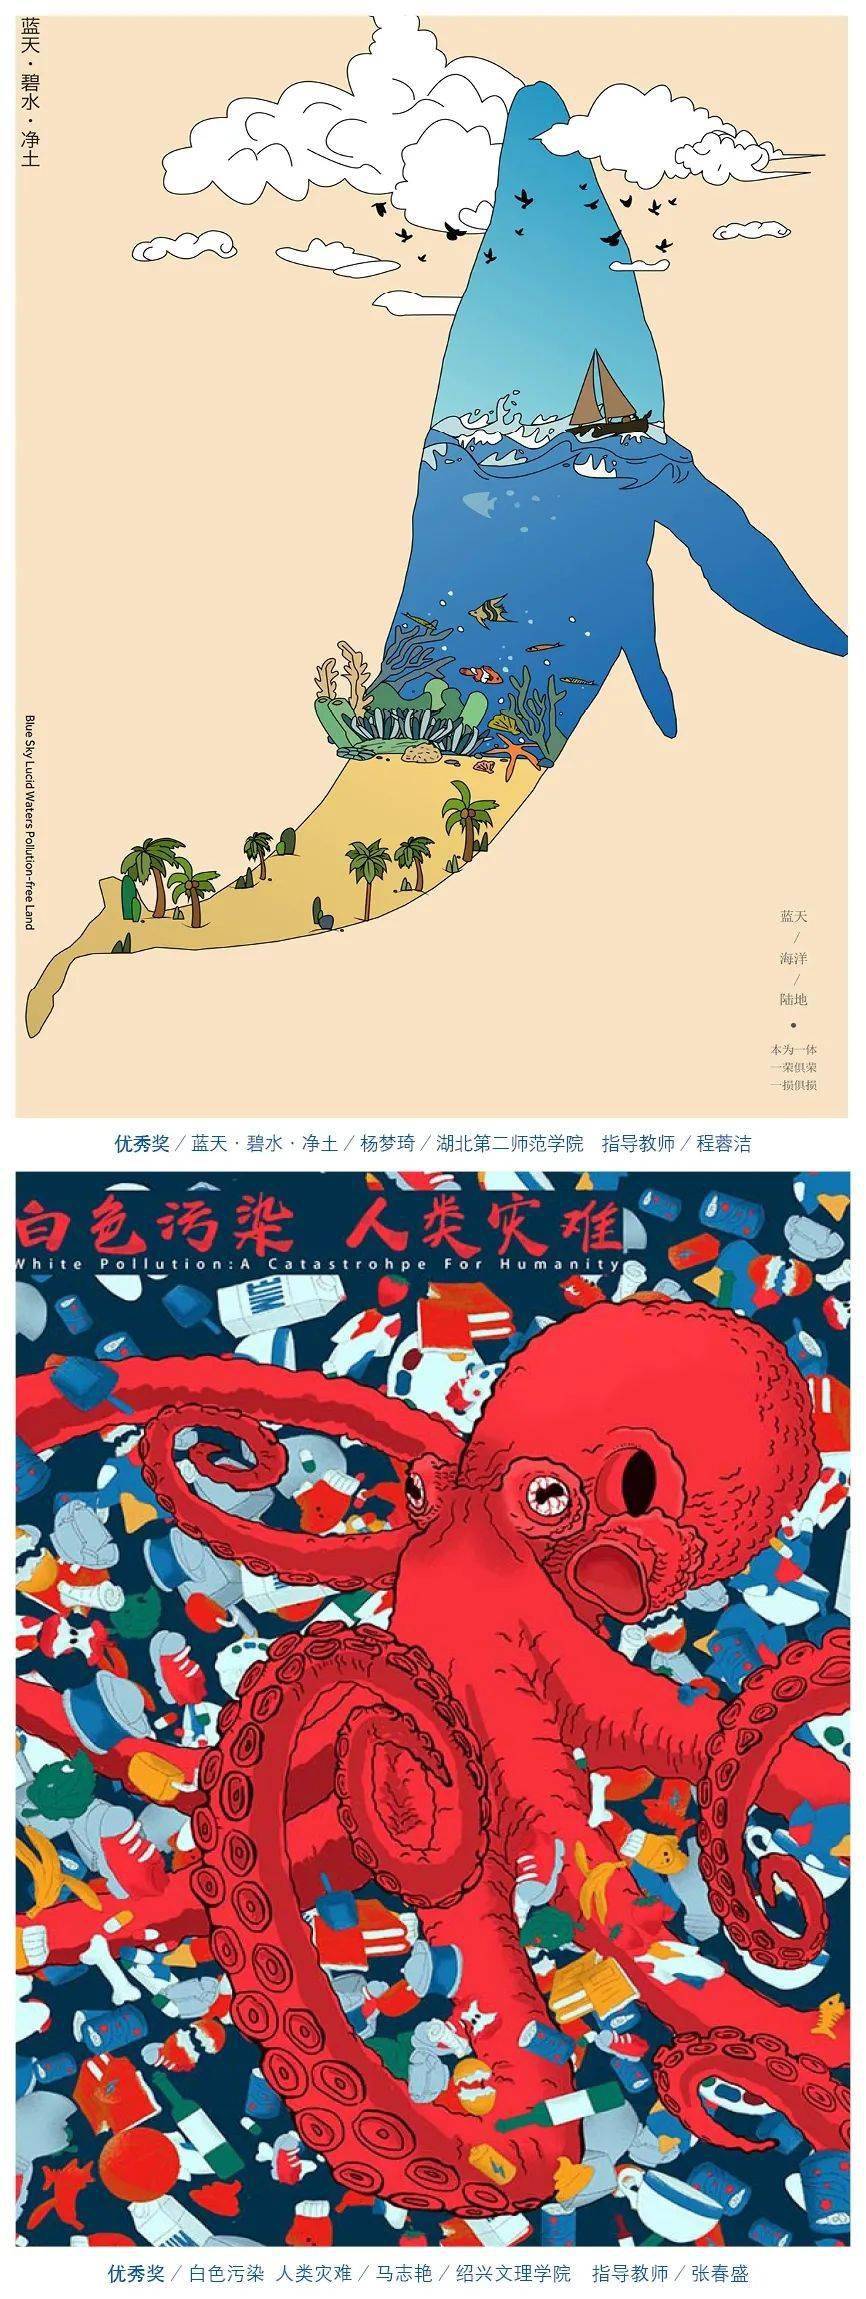 第九届海洋文化创意设计大赛-海报设计获奖创意